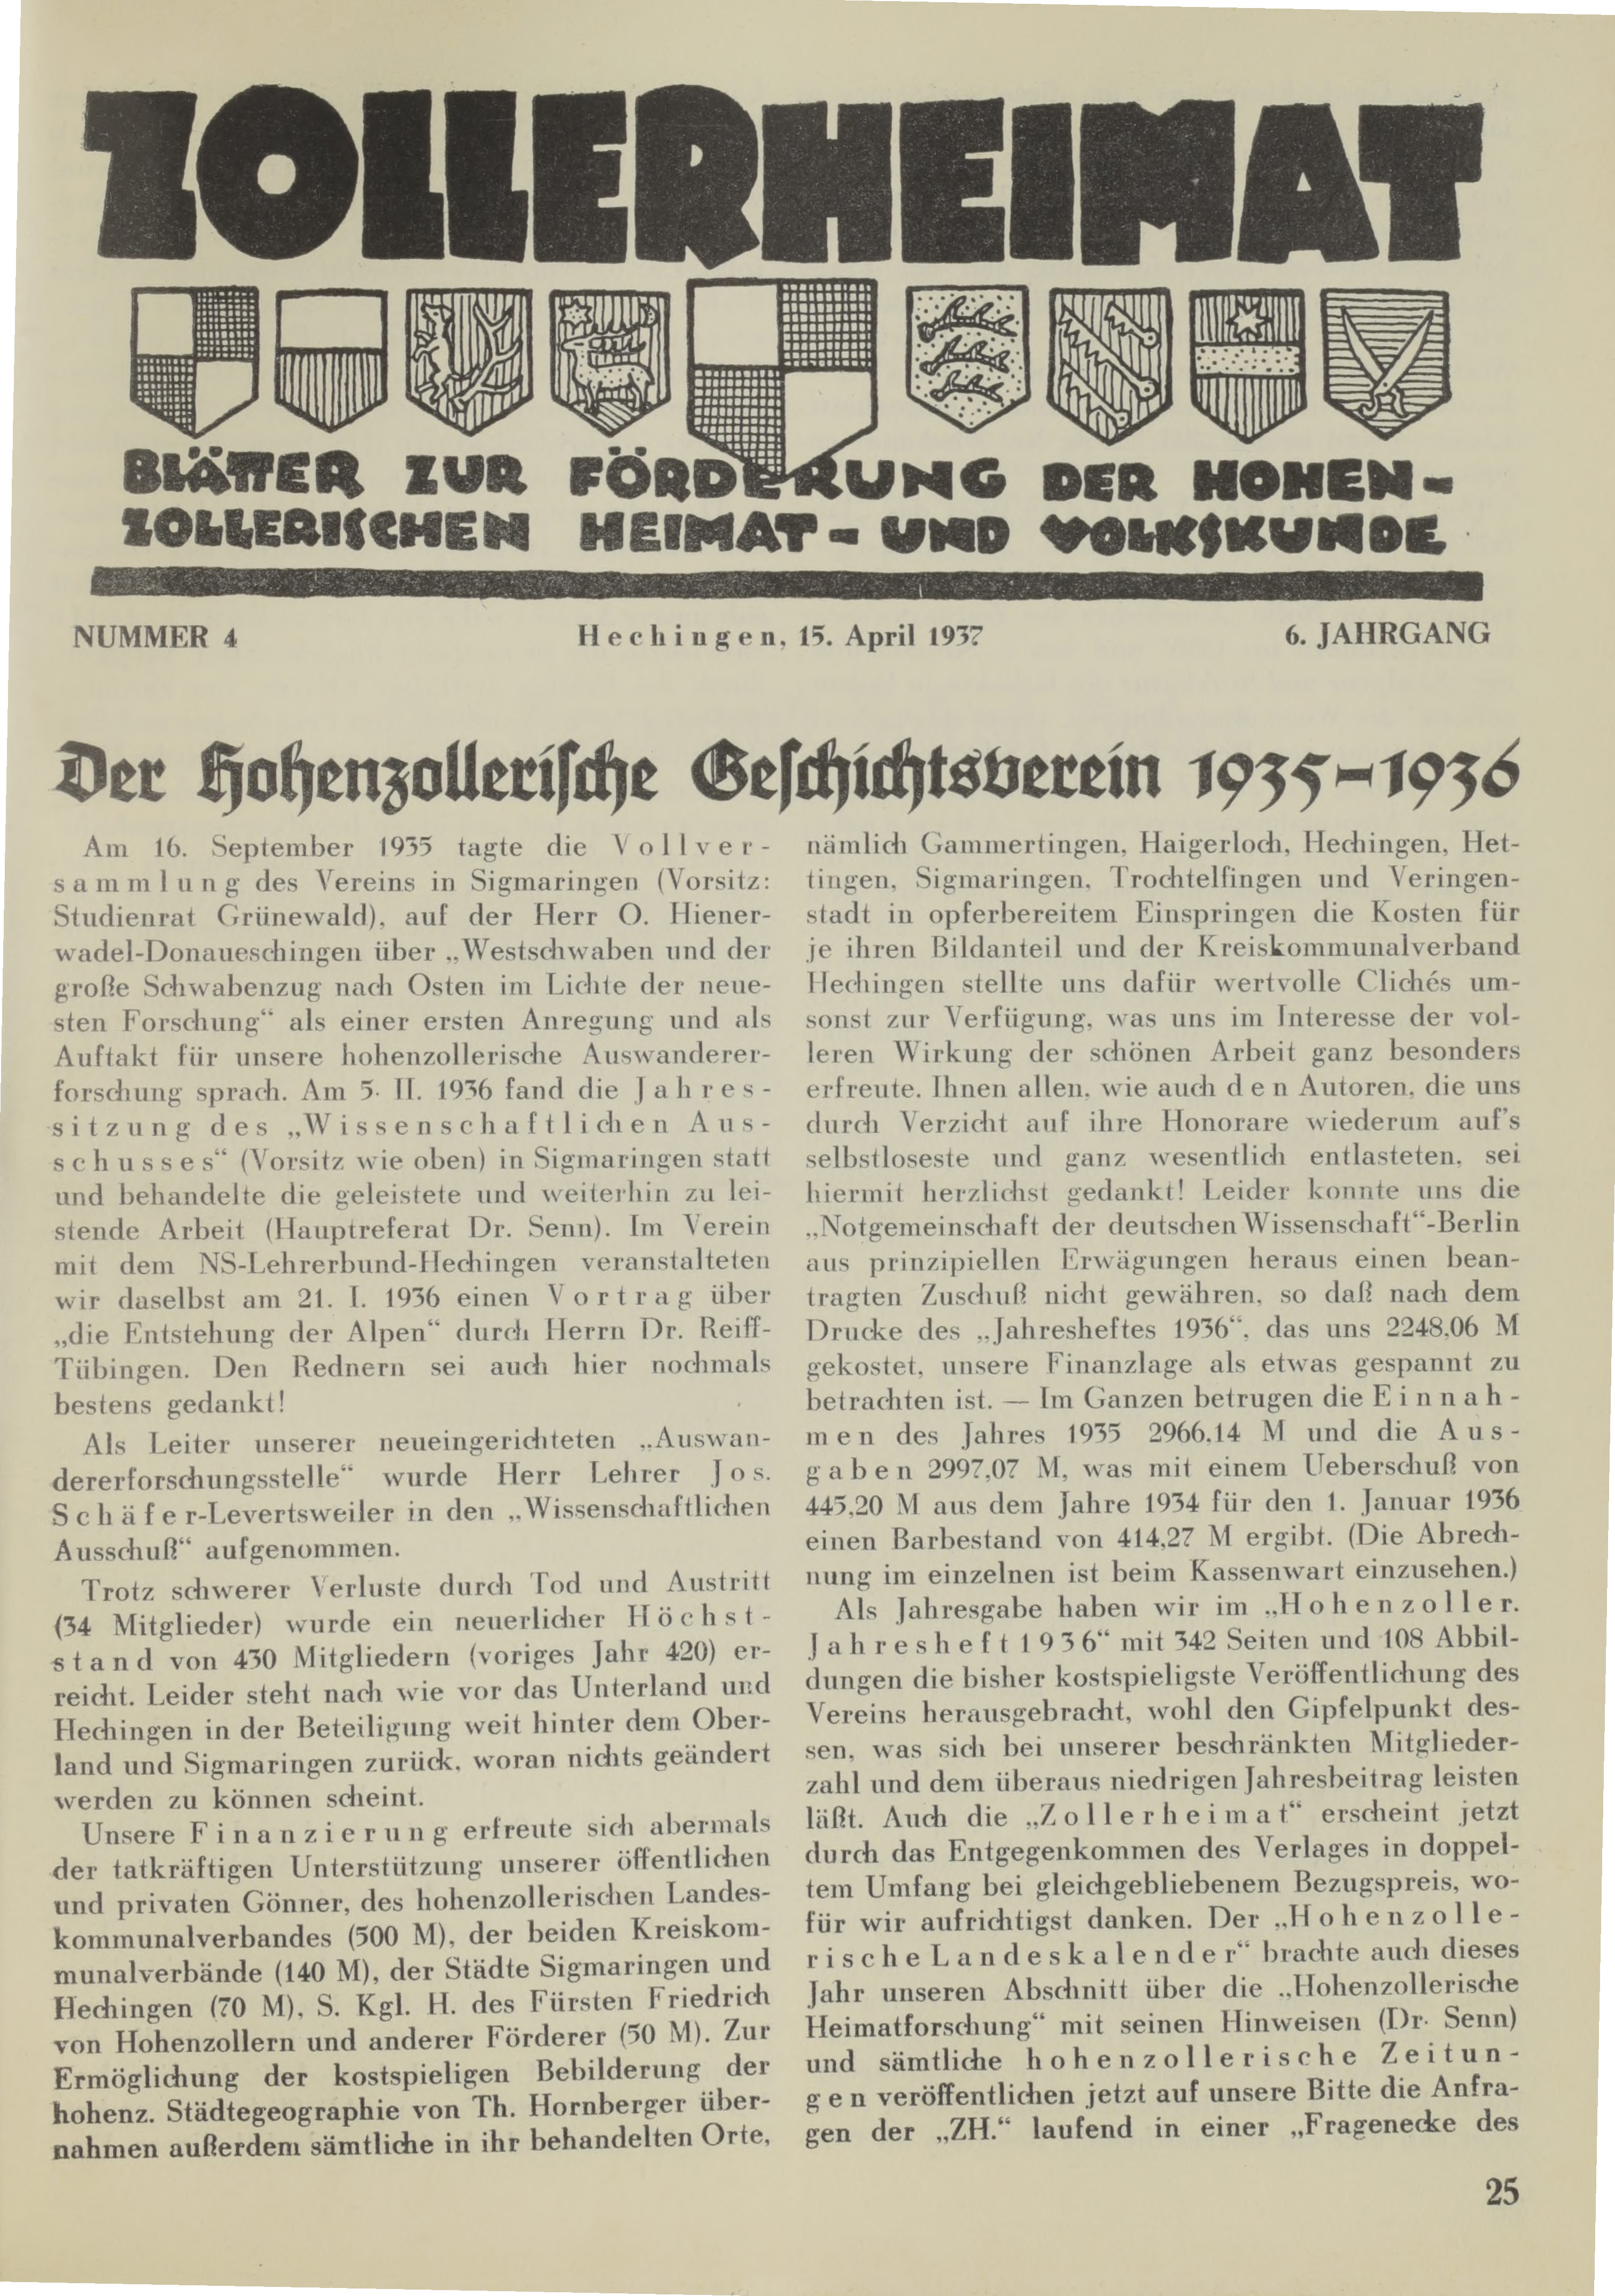                     Ansehen Bd. 6 Nr. 4 (1937): Zollerheimat
                